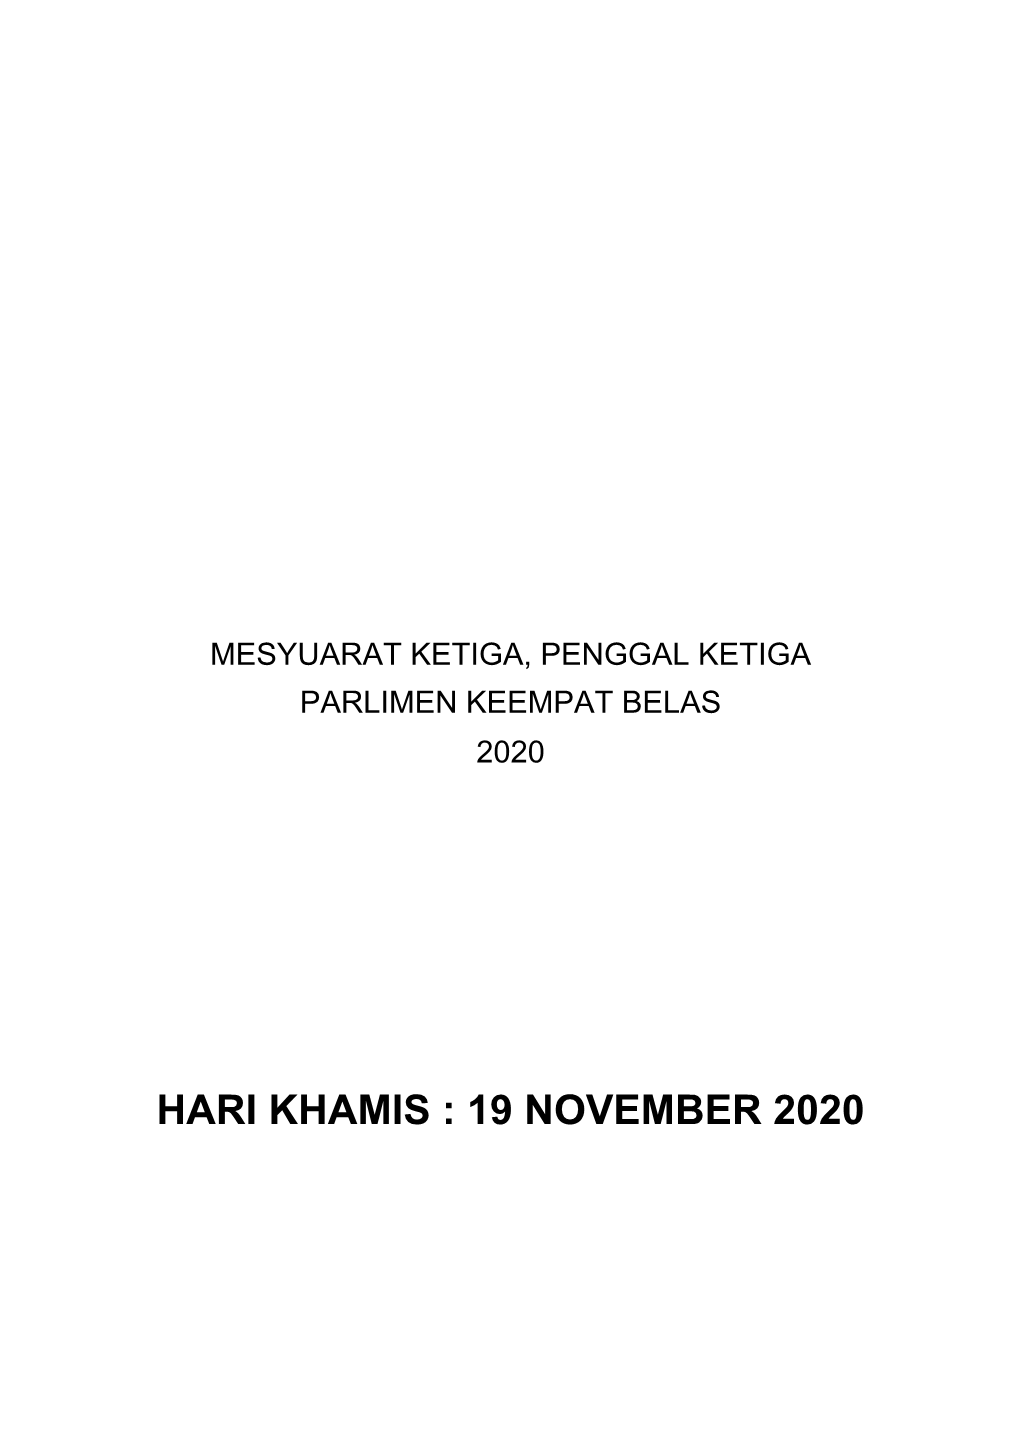 19 November 2020